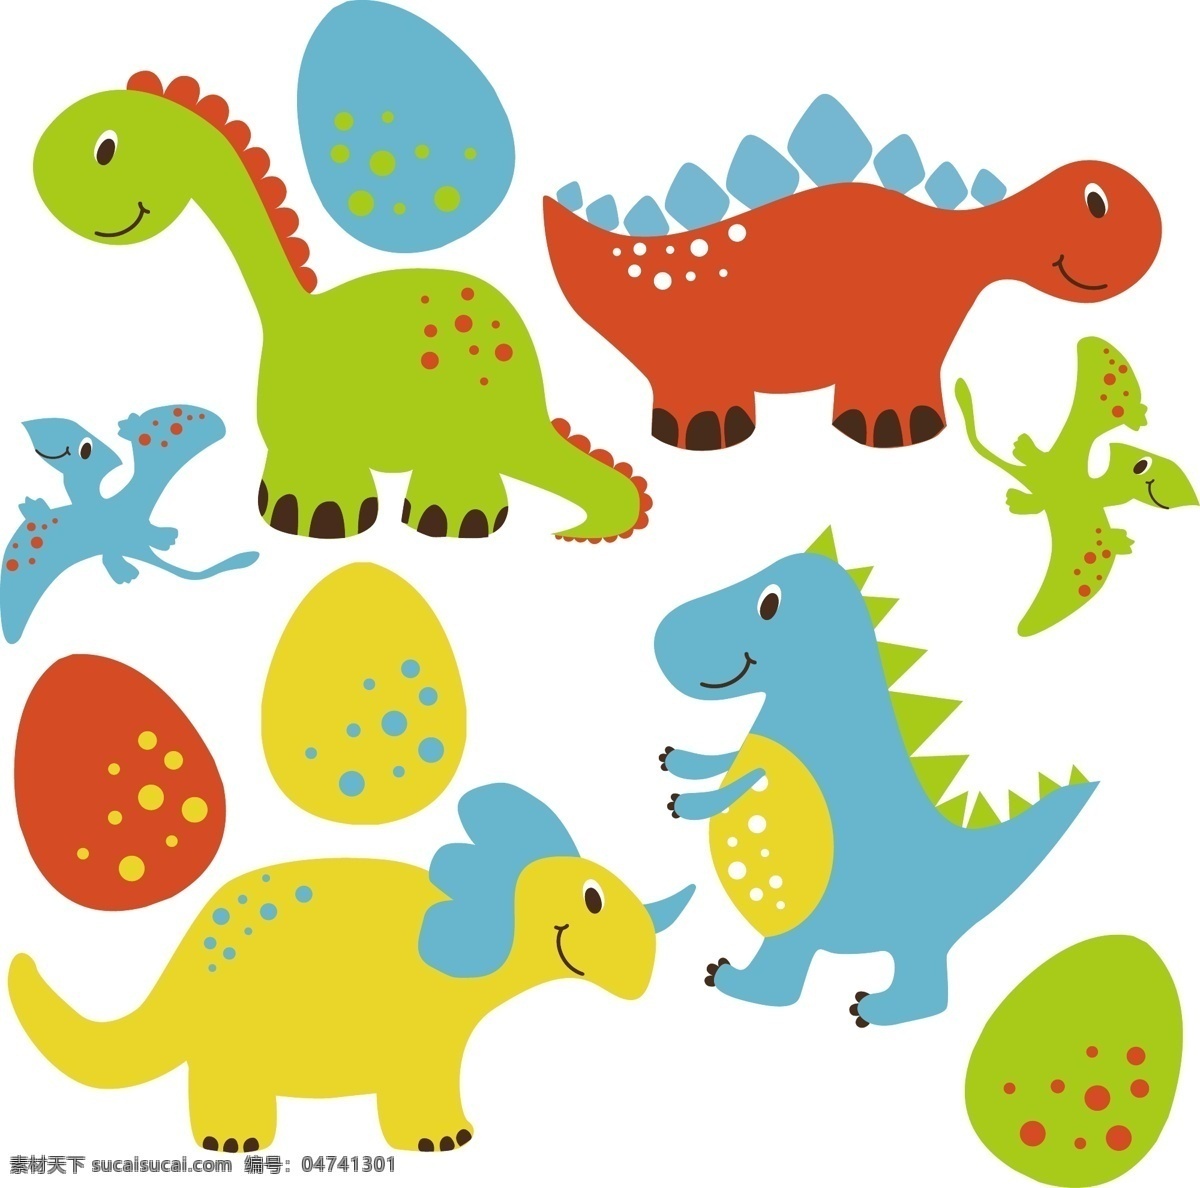 手绘卡通恐龙 婴儿 动物 卡通 绘制 可爱 怪物 恐龙 搞笑 取材 野生